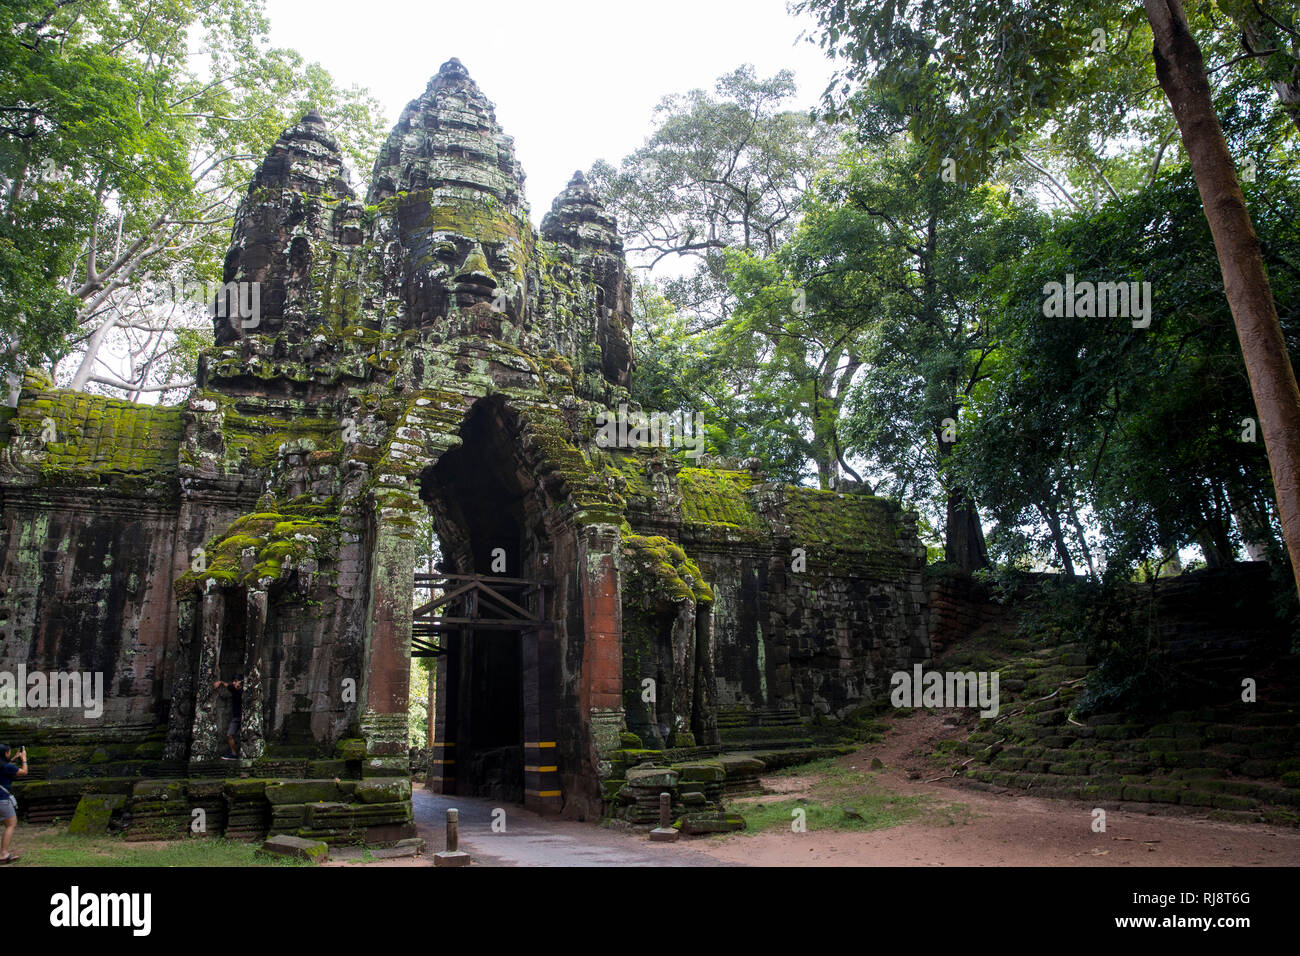 Siem Reap Angkor, ein Tor von Angkor Thom, die Stadt ehemalige damals die Größe von Manhattan hatte, heute eine touristische Sehenswürdigkeit Foto de stock